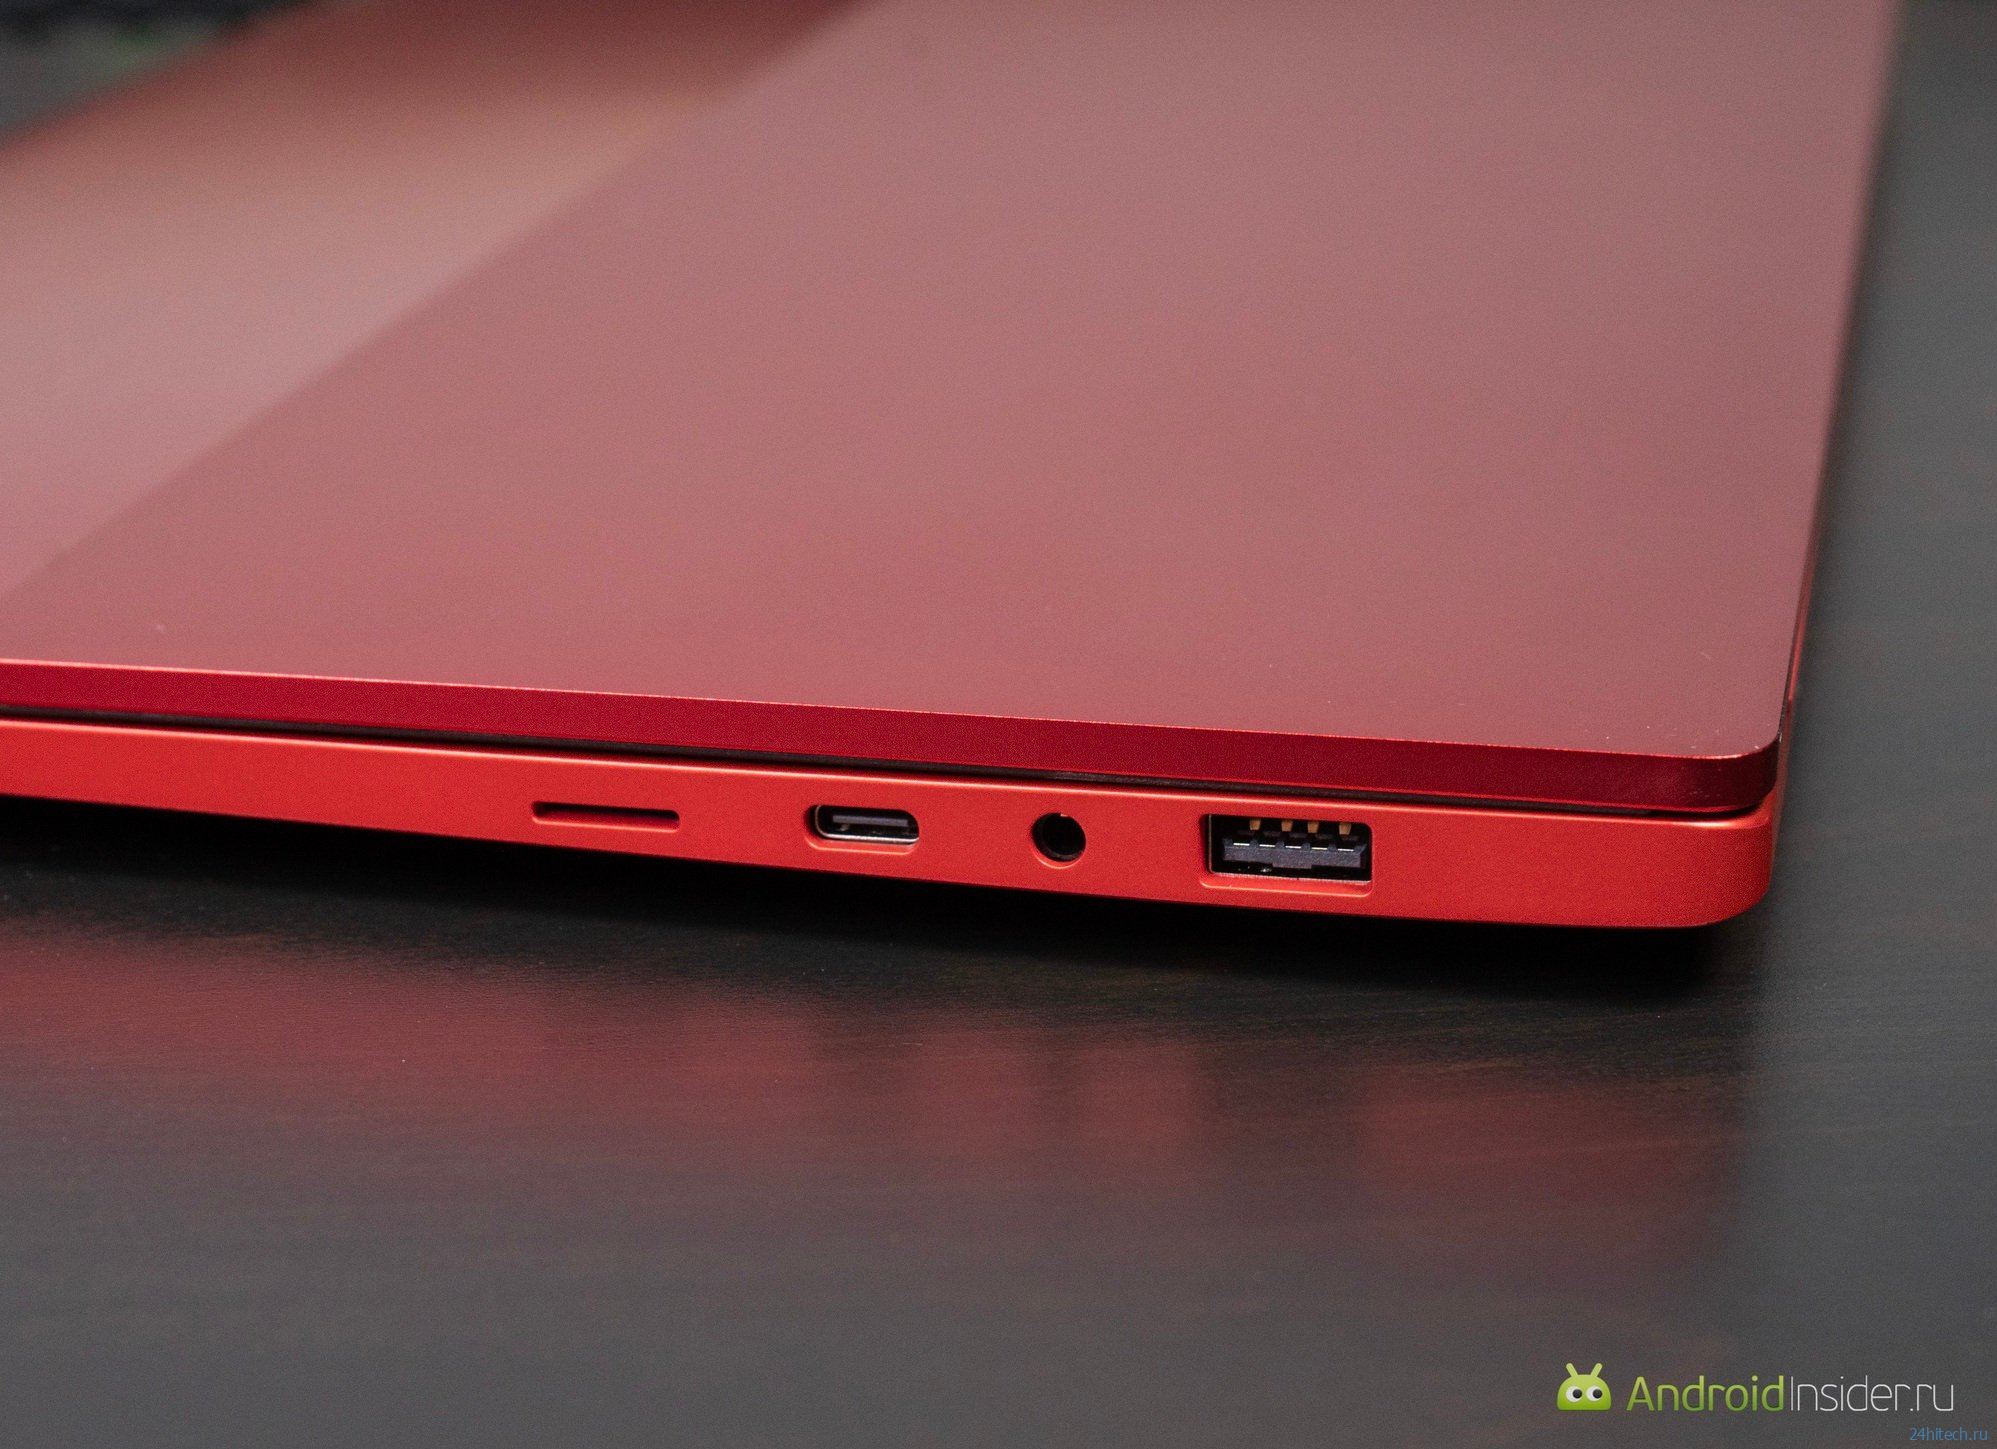 Яркий ноутбук в металлическом корпусе — обзор Infinix Inbook X2 Plus